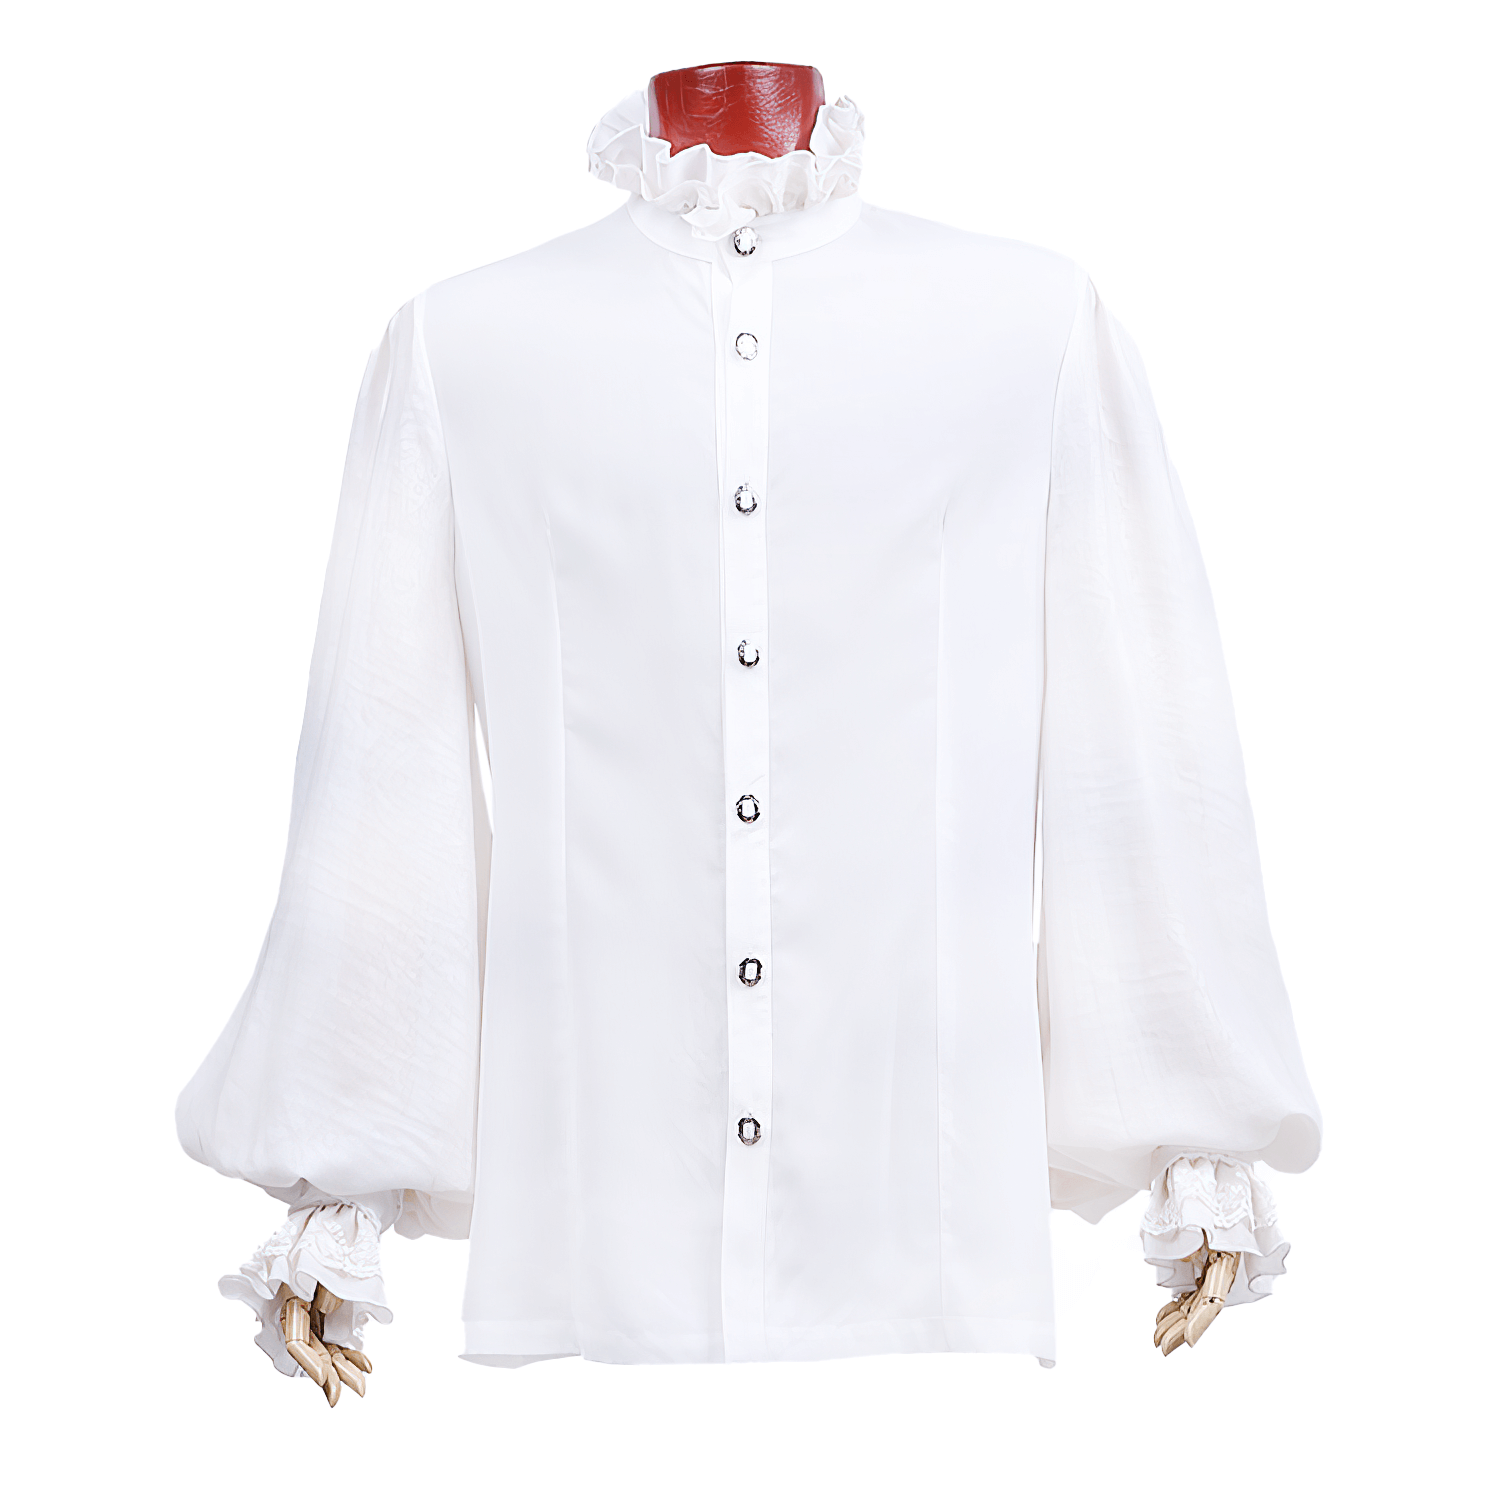 Victorian Inspired White Ruffle Dress Shirt for Men - HARD'N'HEAVY